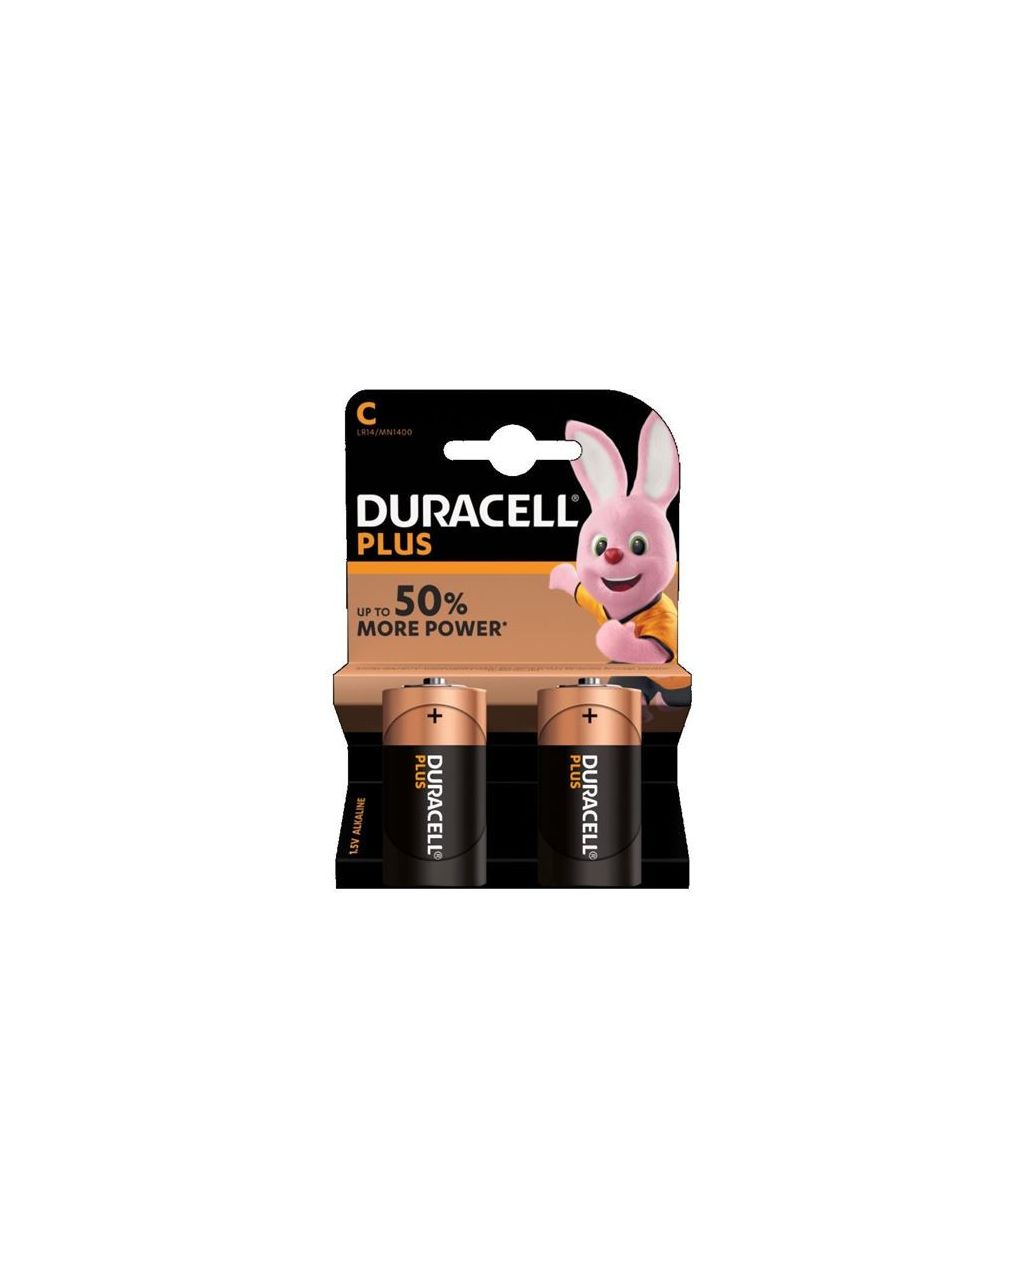 Duracell - plus power mezza torcia